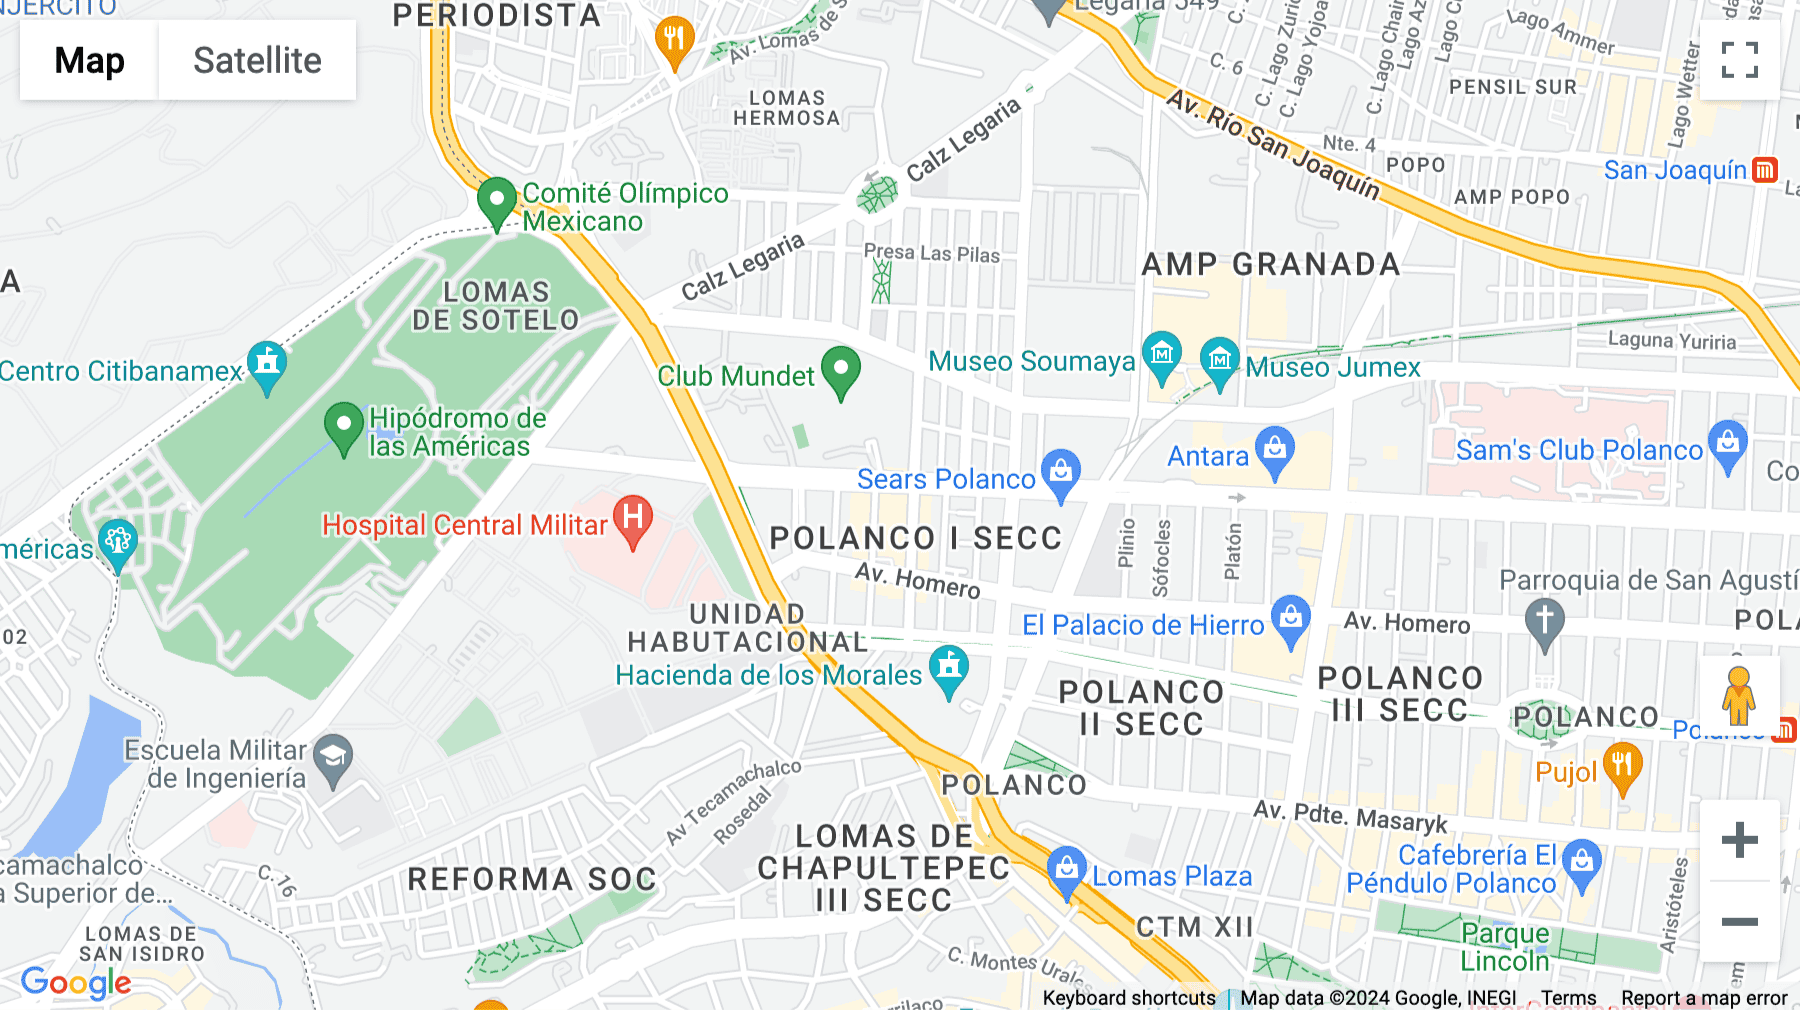 Click for interative map of Jaime Balmes 11, Torre A, Piso 1, Polanco, Mexico City